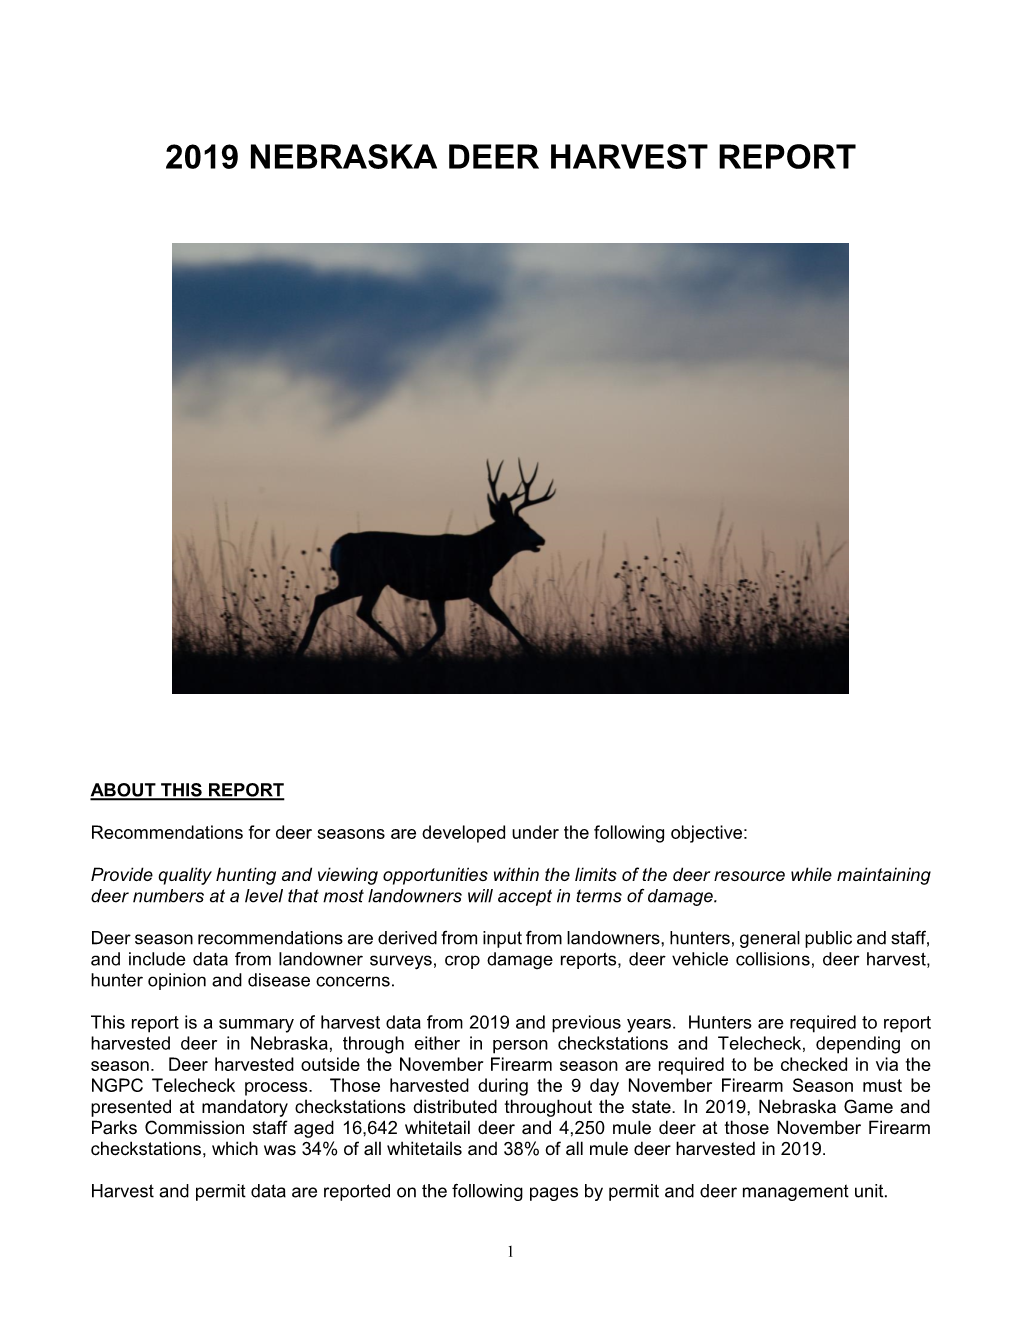 View 2019 Deer Harvest Report